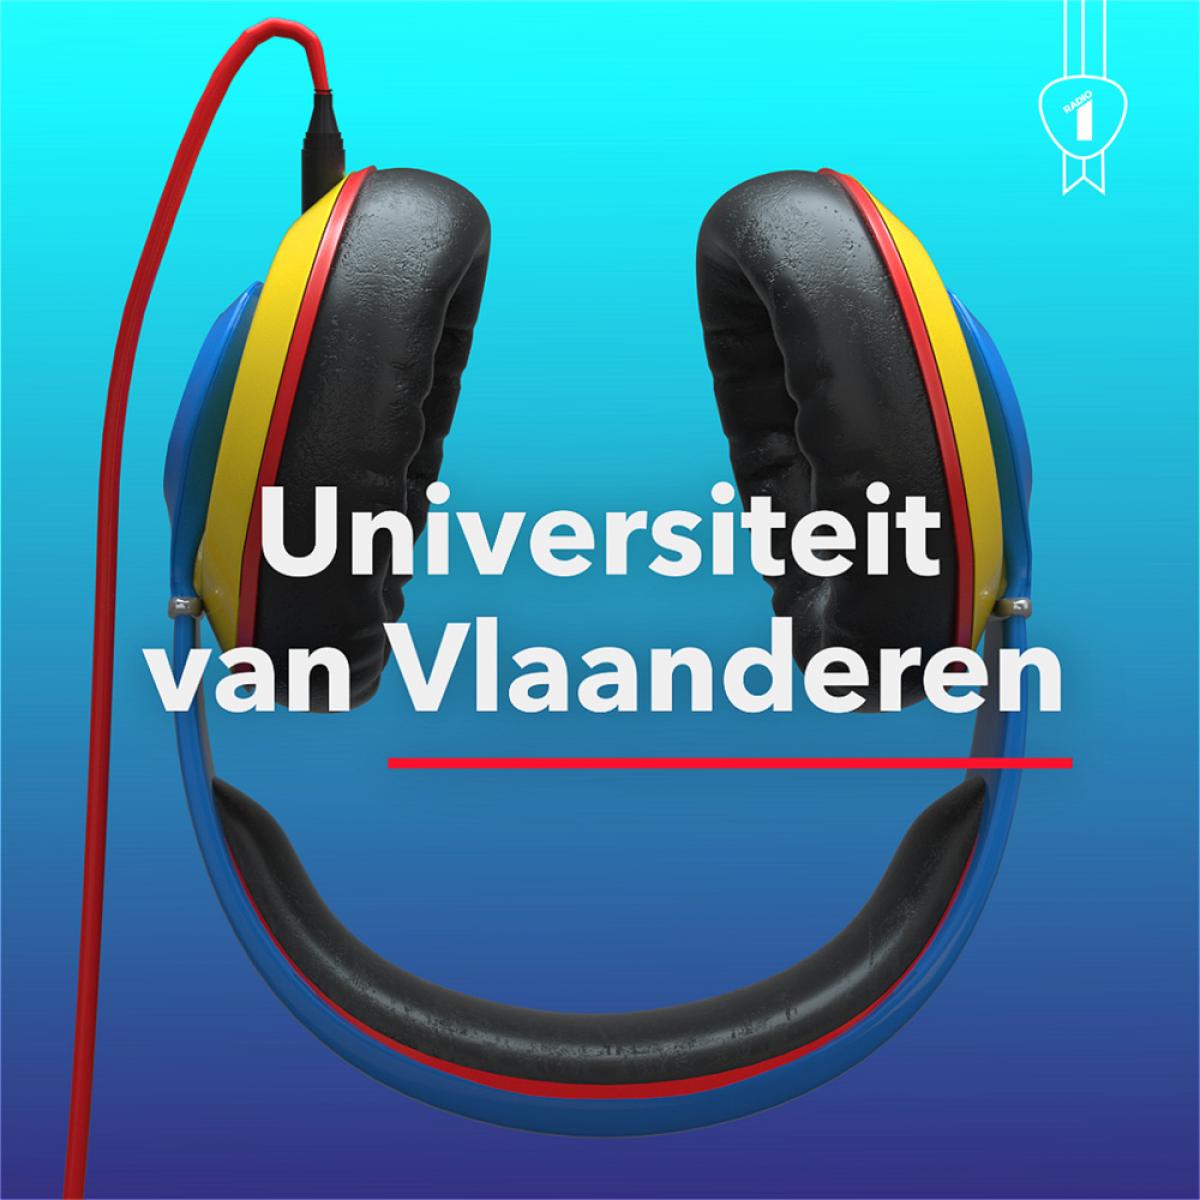 10. Universiteit van Vlaanderen